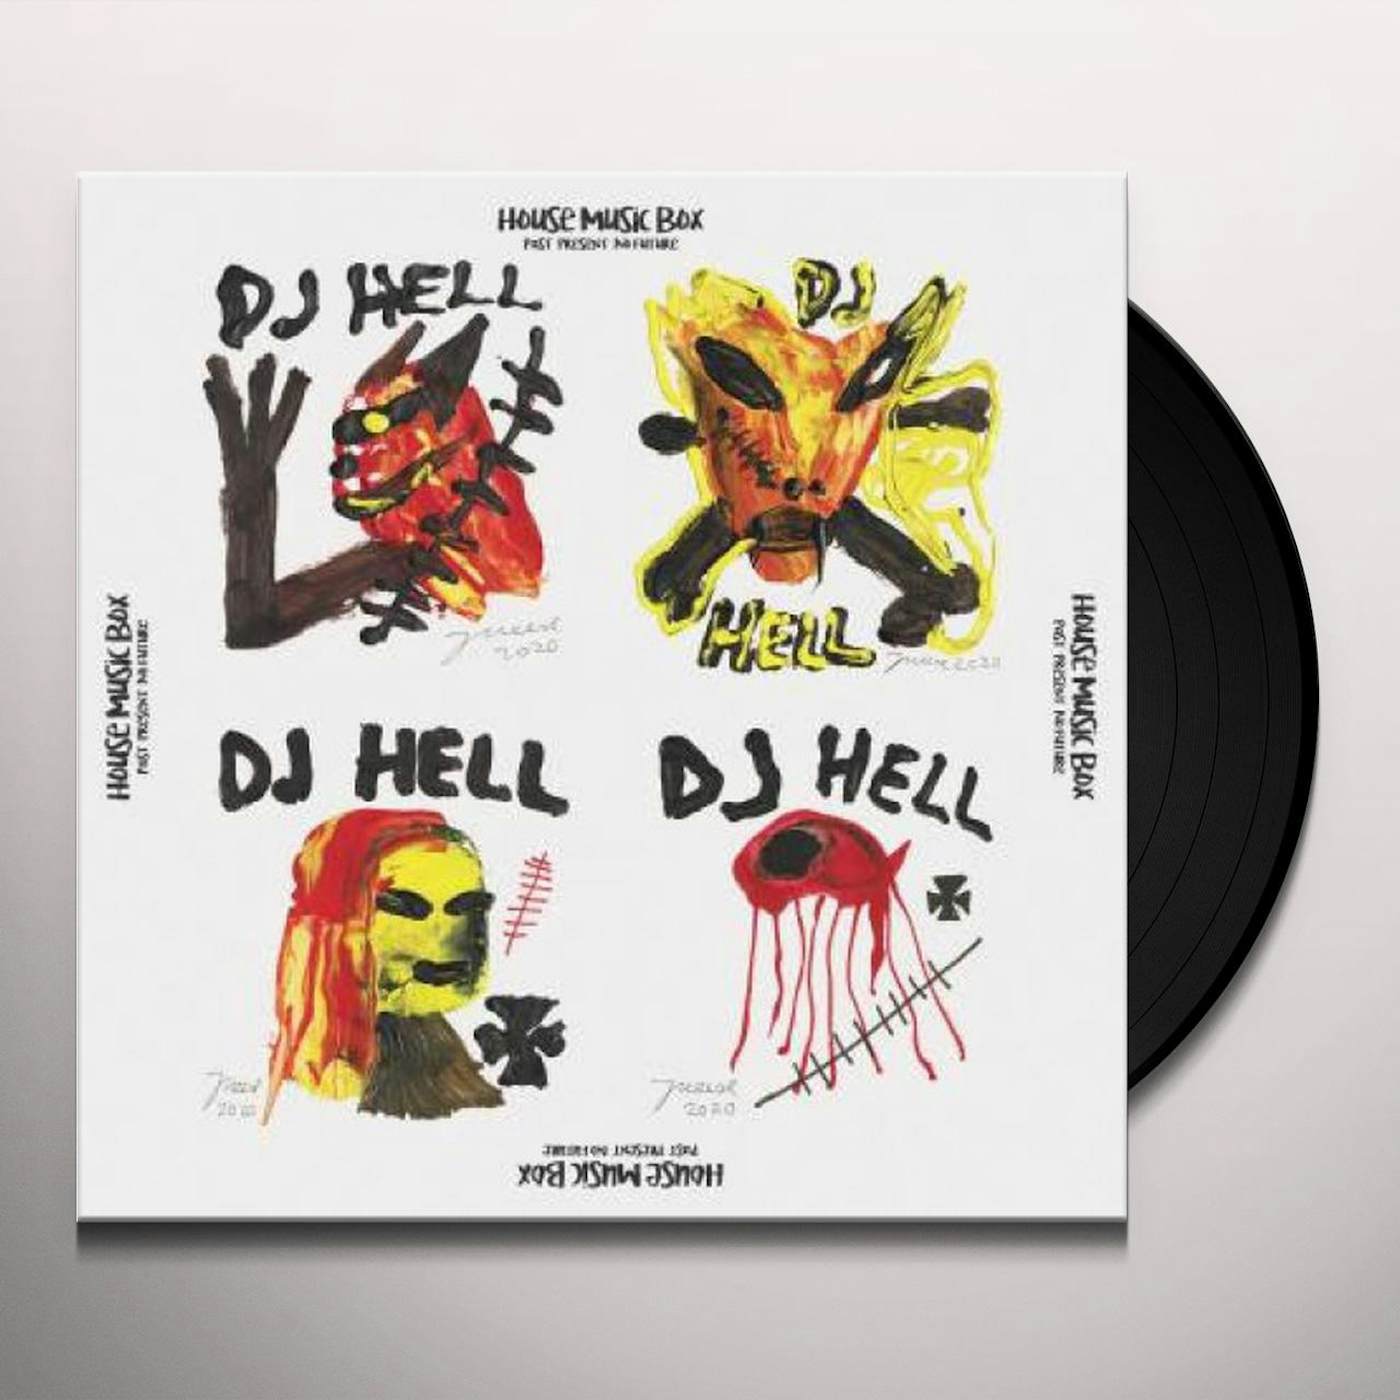 DJ Hell HOUSE MUSIC BOX REMIXES ( FLUEGEL,ROMAN / PEREL ) (Vinyl)